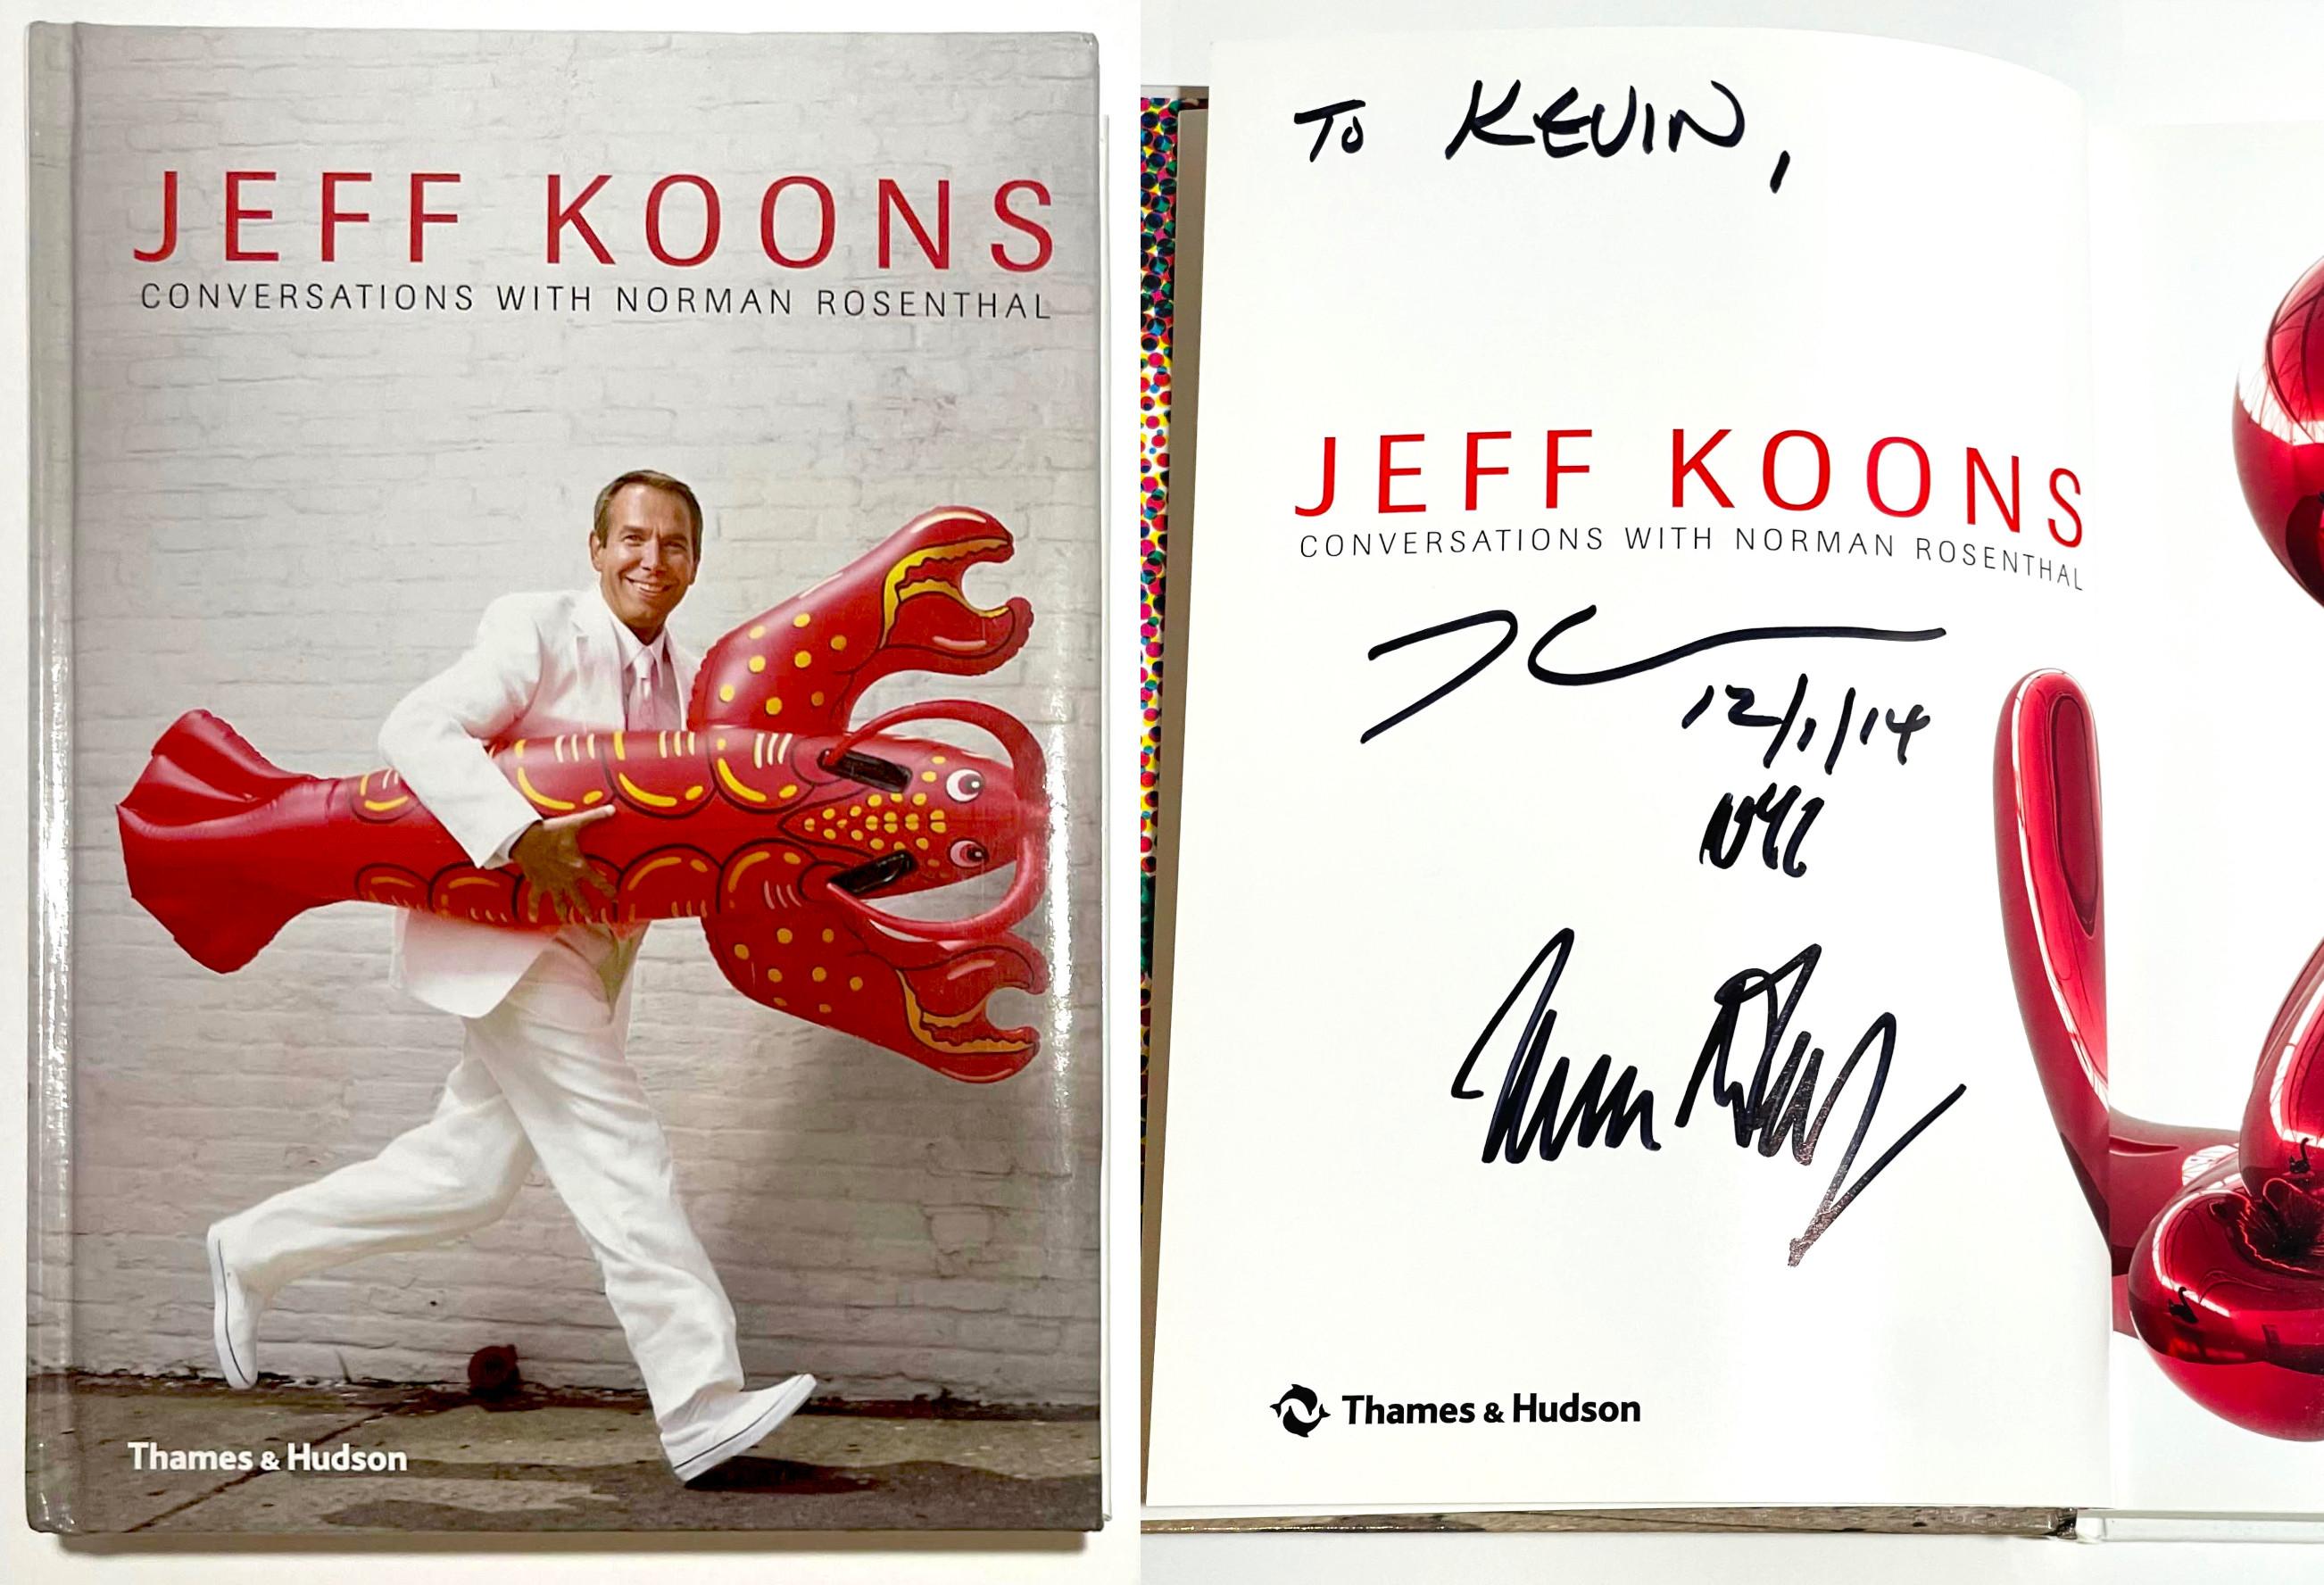 Jeff Koons Conversations with Norman Rosenthal (signé à la main et inscrit par les DEUX Jeff Koons et Norman Rosenthal), 2014.
Monographie reliée (signée, datée et inscrite à la main)
Signé à la main, daté et inscrit par Jeff Koons ET Norman